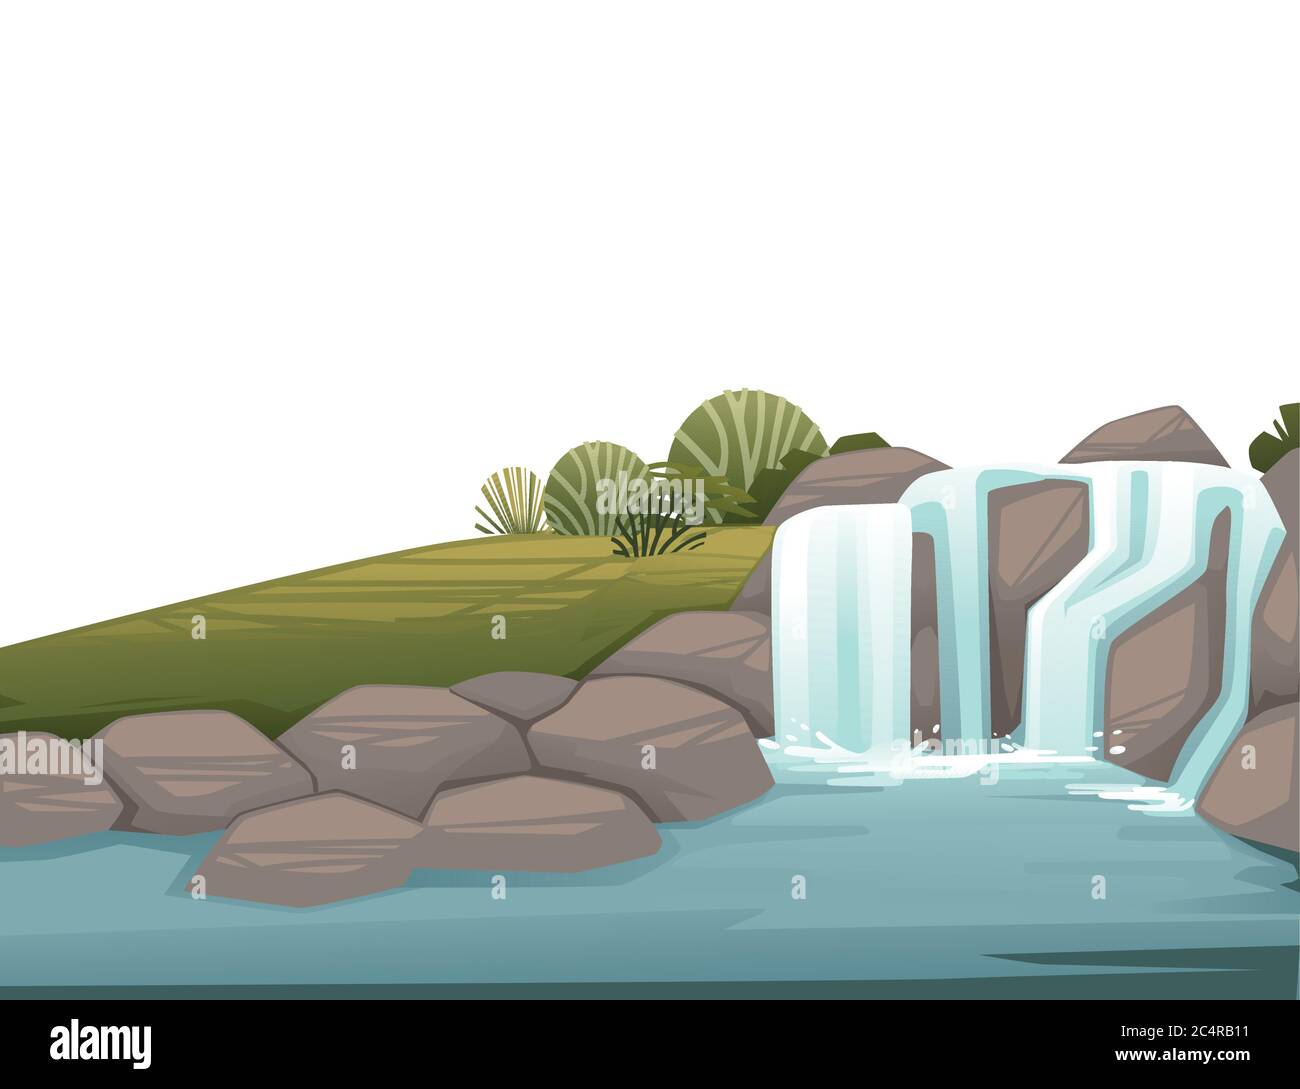 Paysage de campagne cascade sur des rochers dessin animé dessin vectoriel plat illustration Illustration de Vecteur